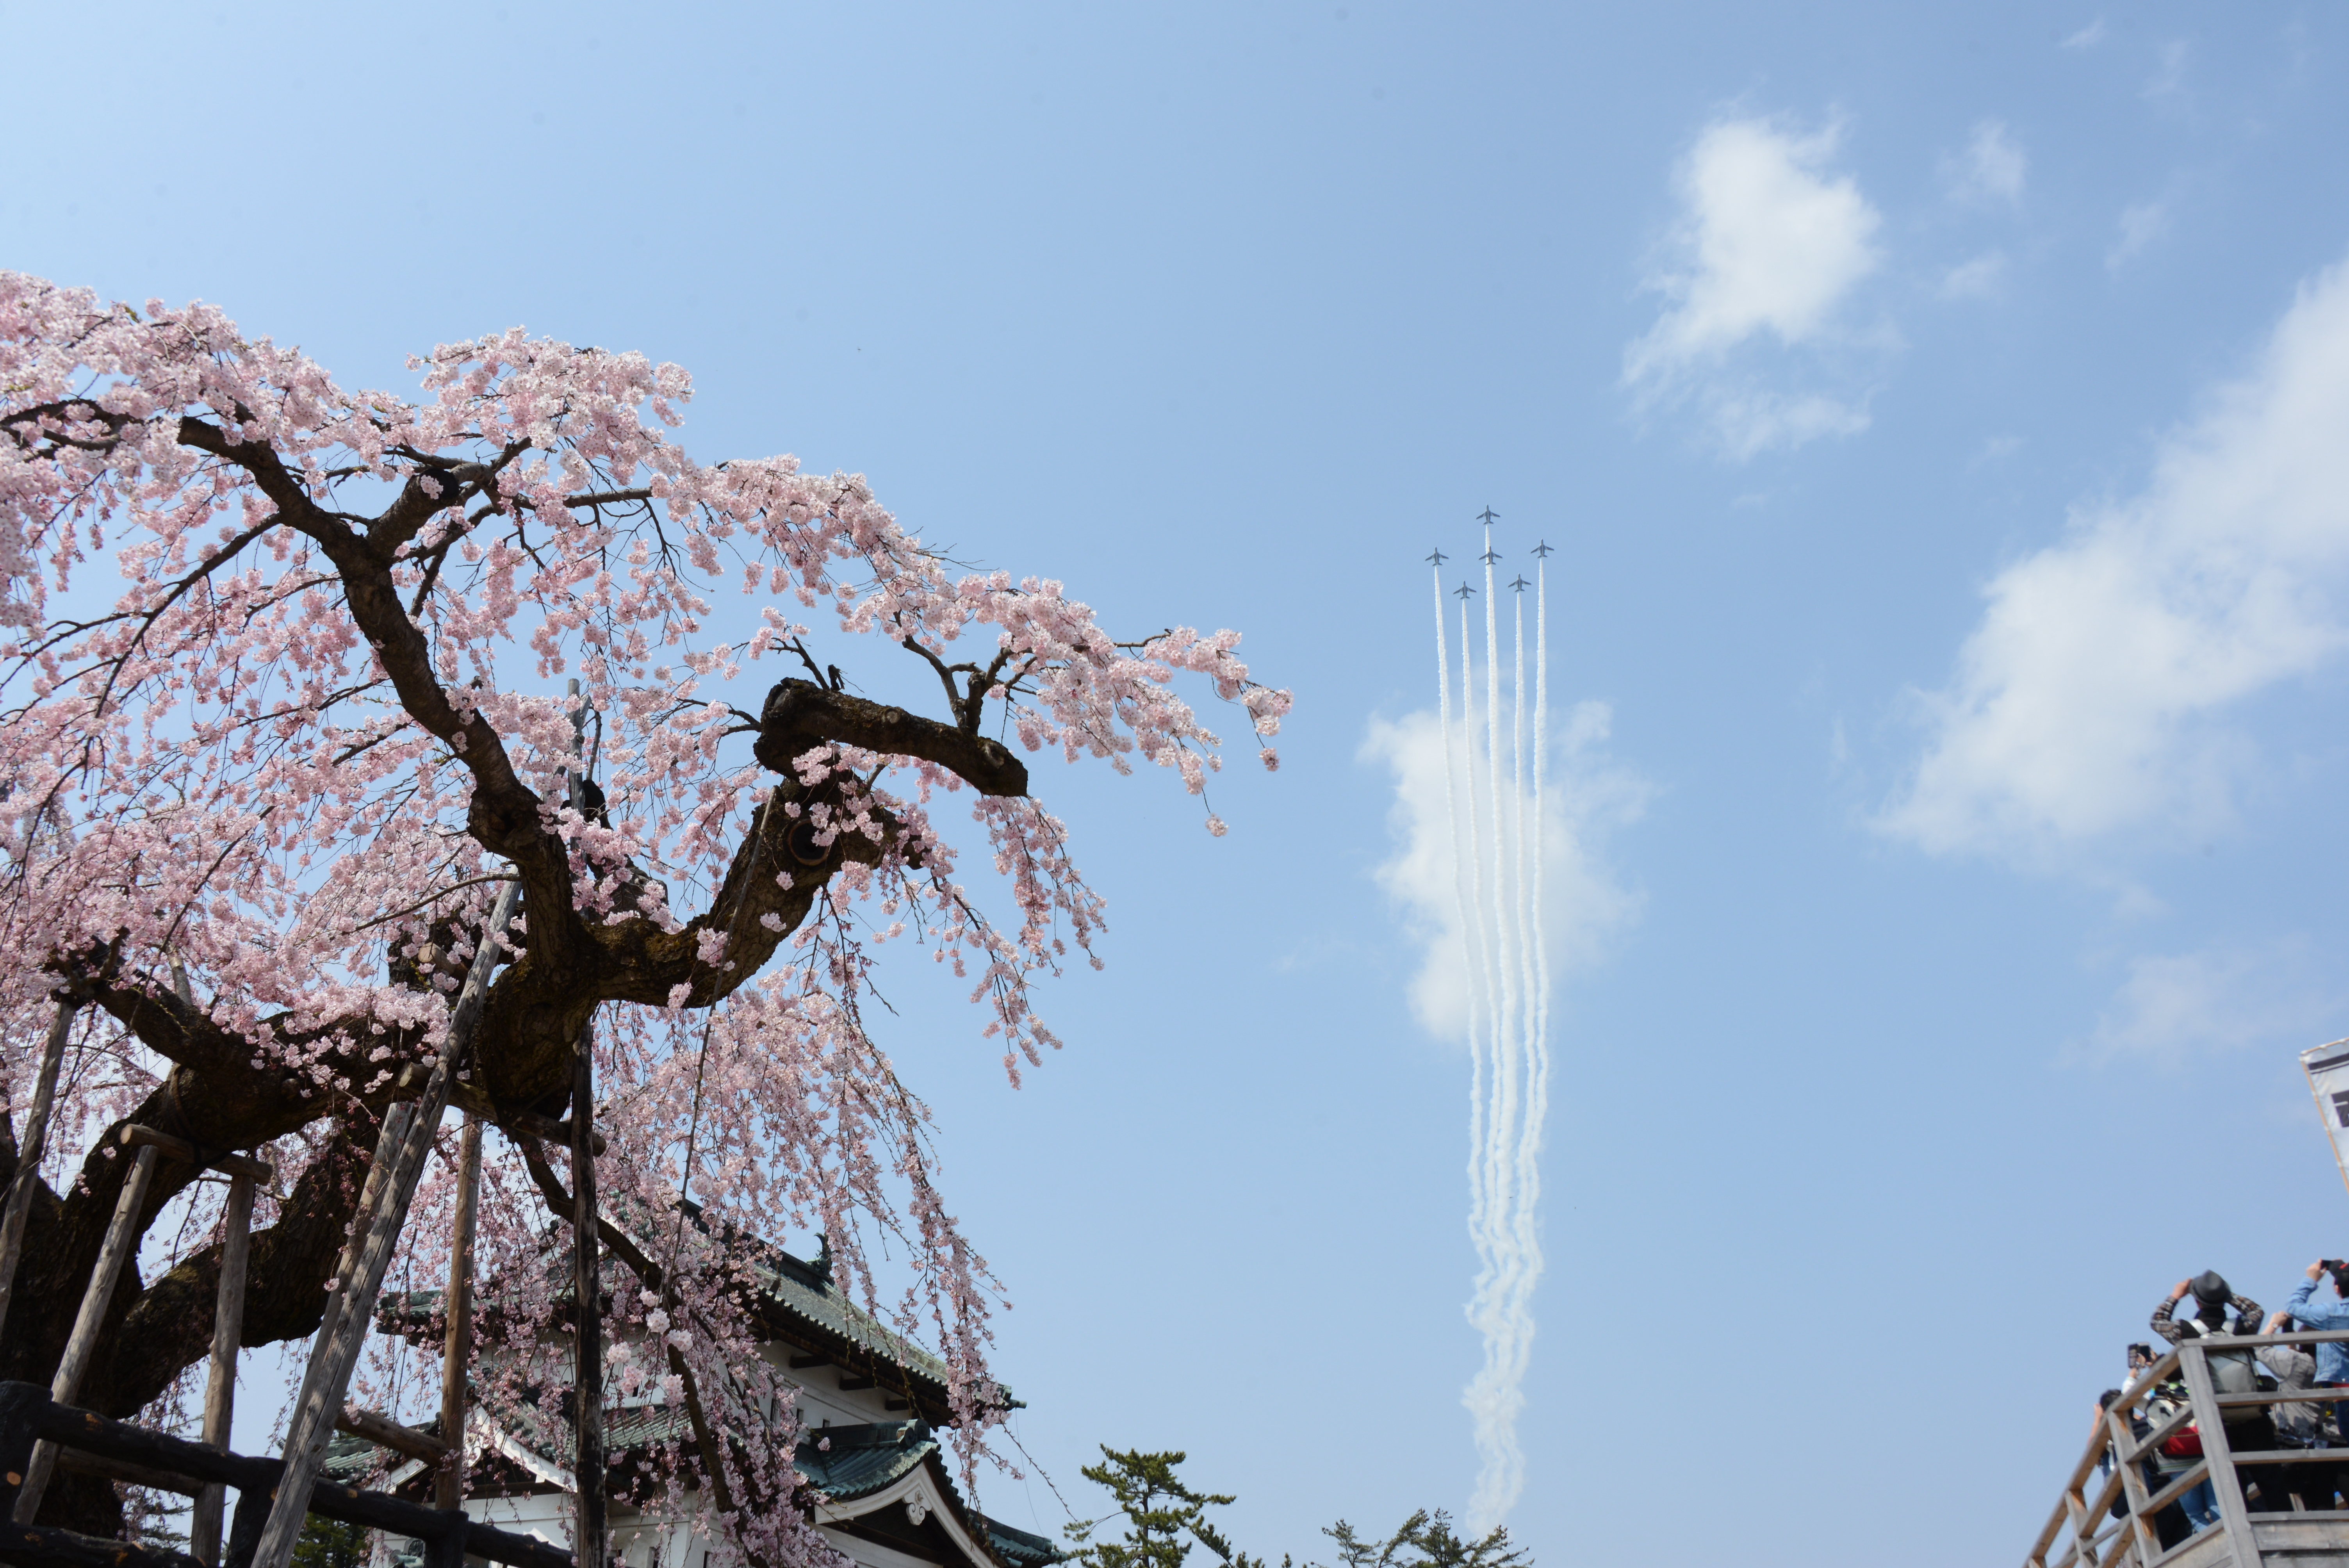 「ブルーインパルス」弘前観桜会100周年祝賀飛行